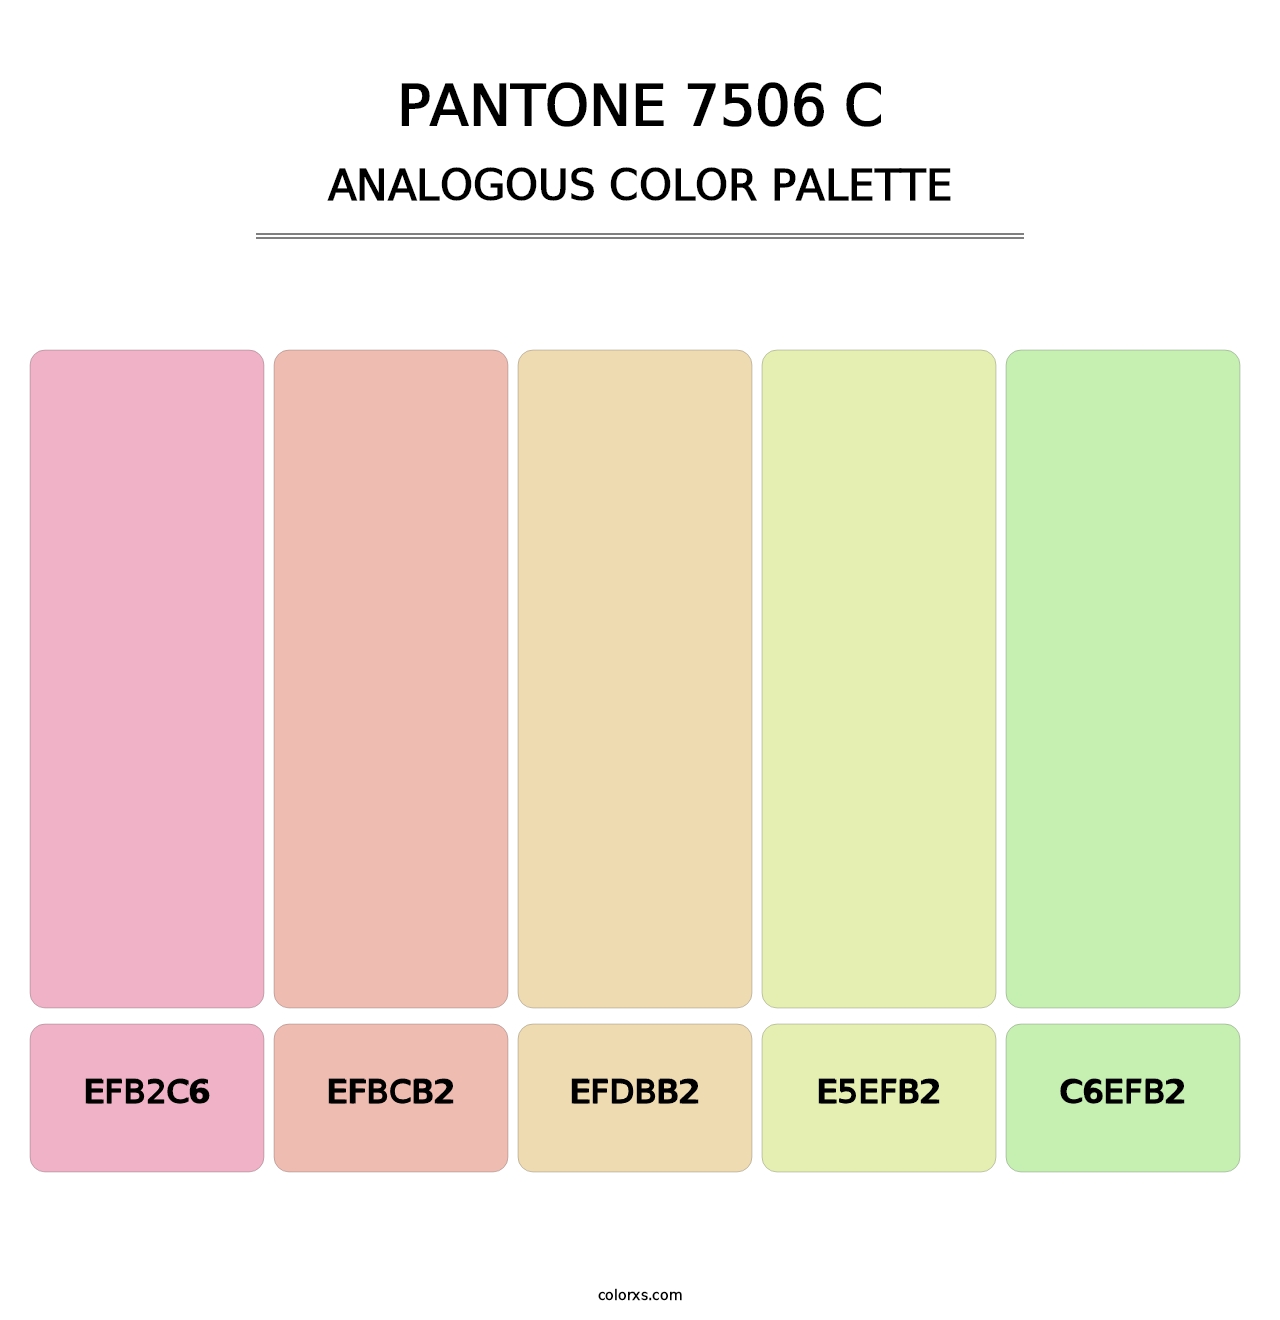 PANTONE 7506 C - Analogous Color Palette